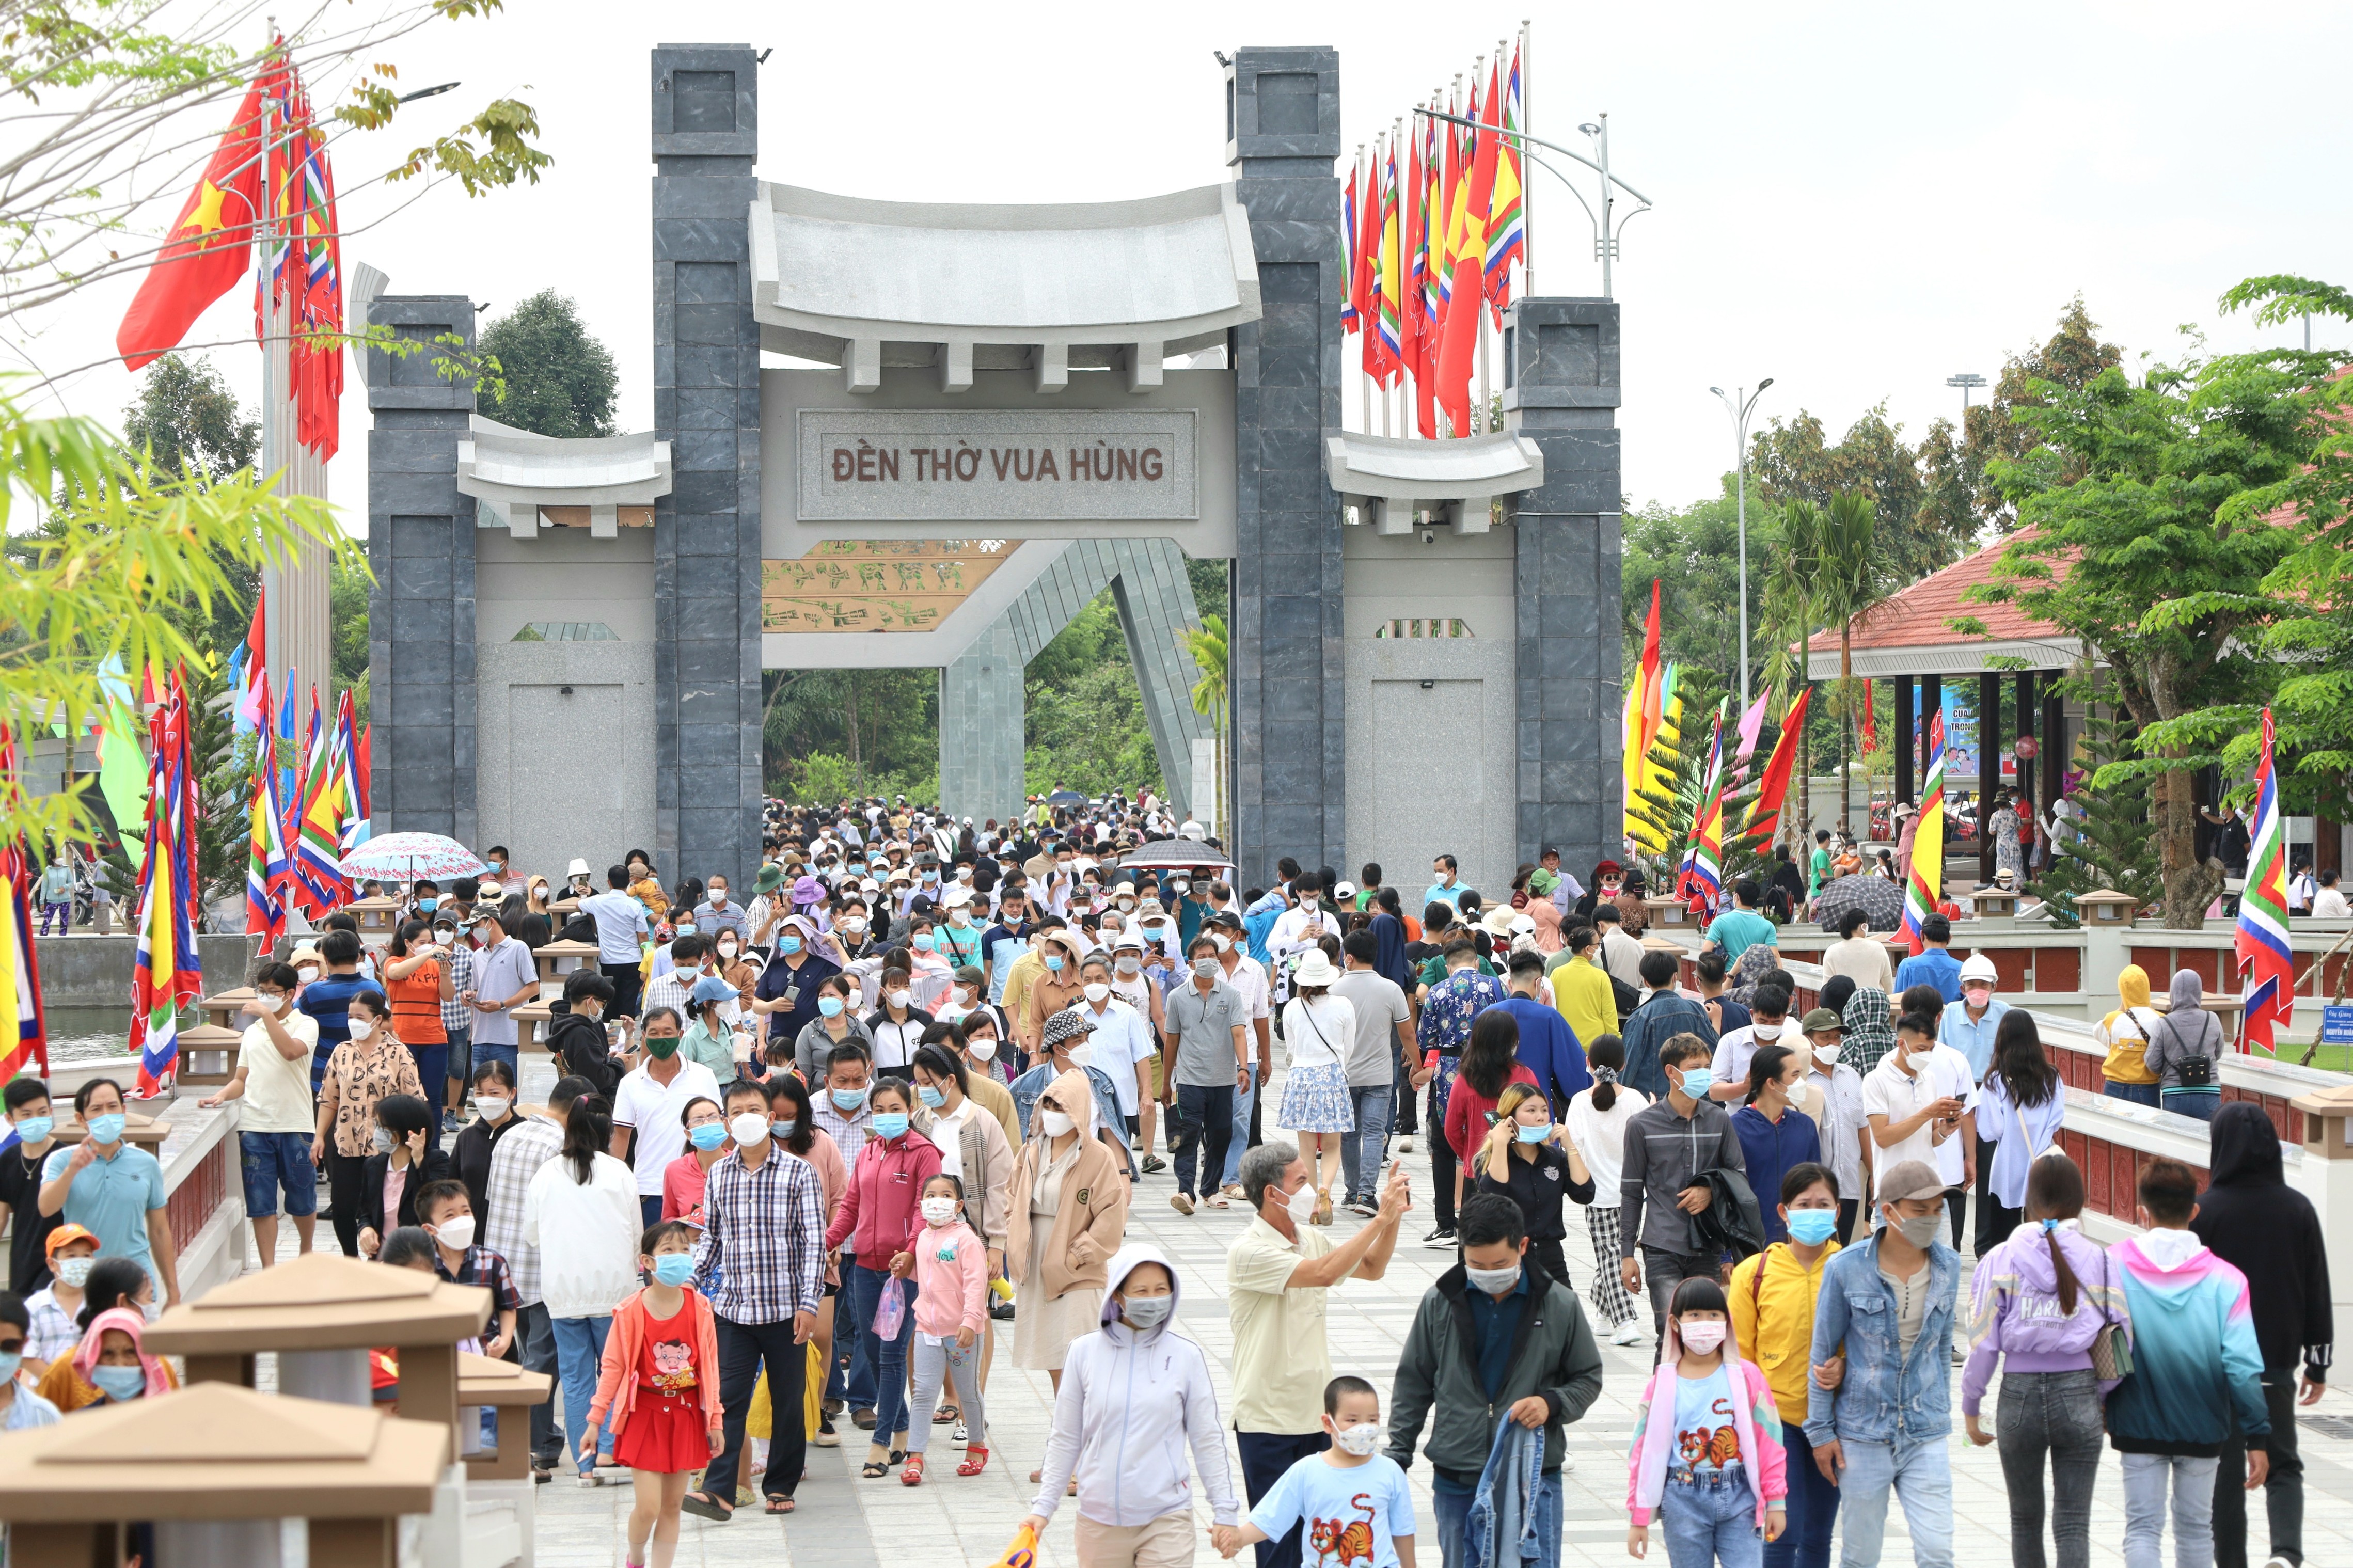 Hàng chục nghìn lượt người dâng hương Đền thờ Vua Hùng ngày Giỗ Tổ.